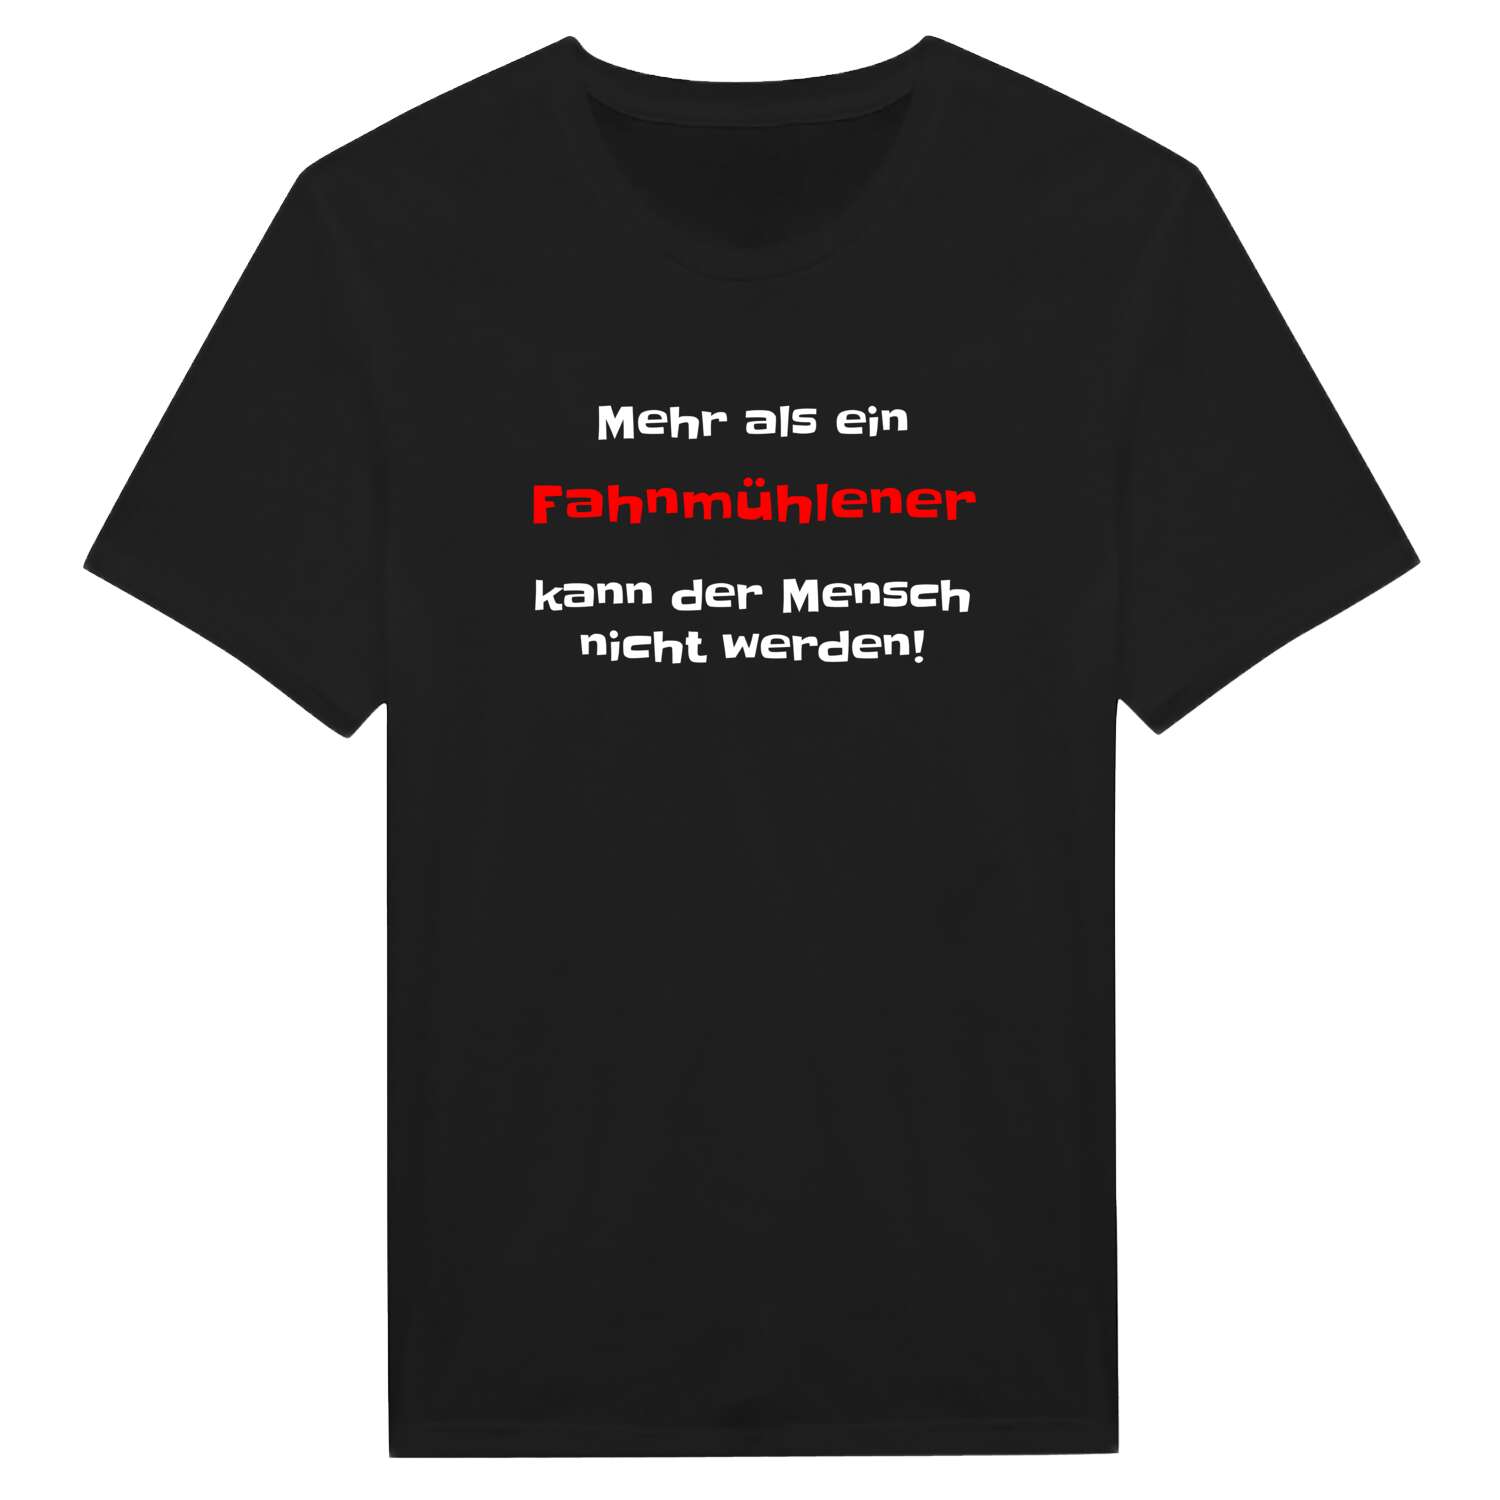 Fahnmühle T-Shirt »Mehr als ein«